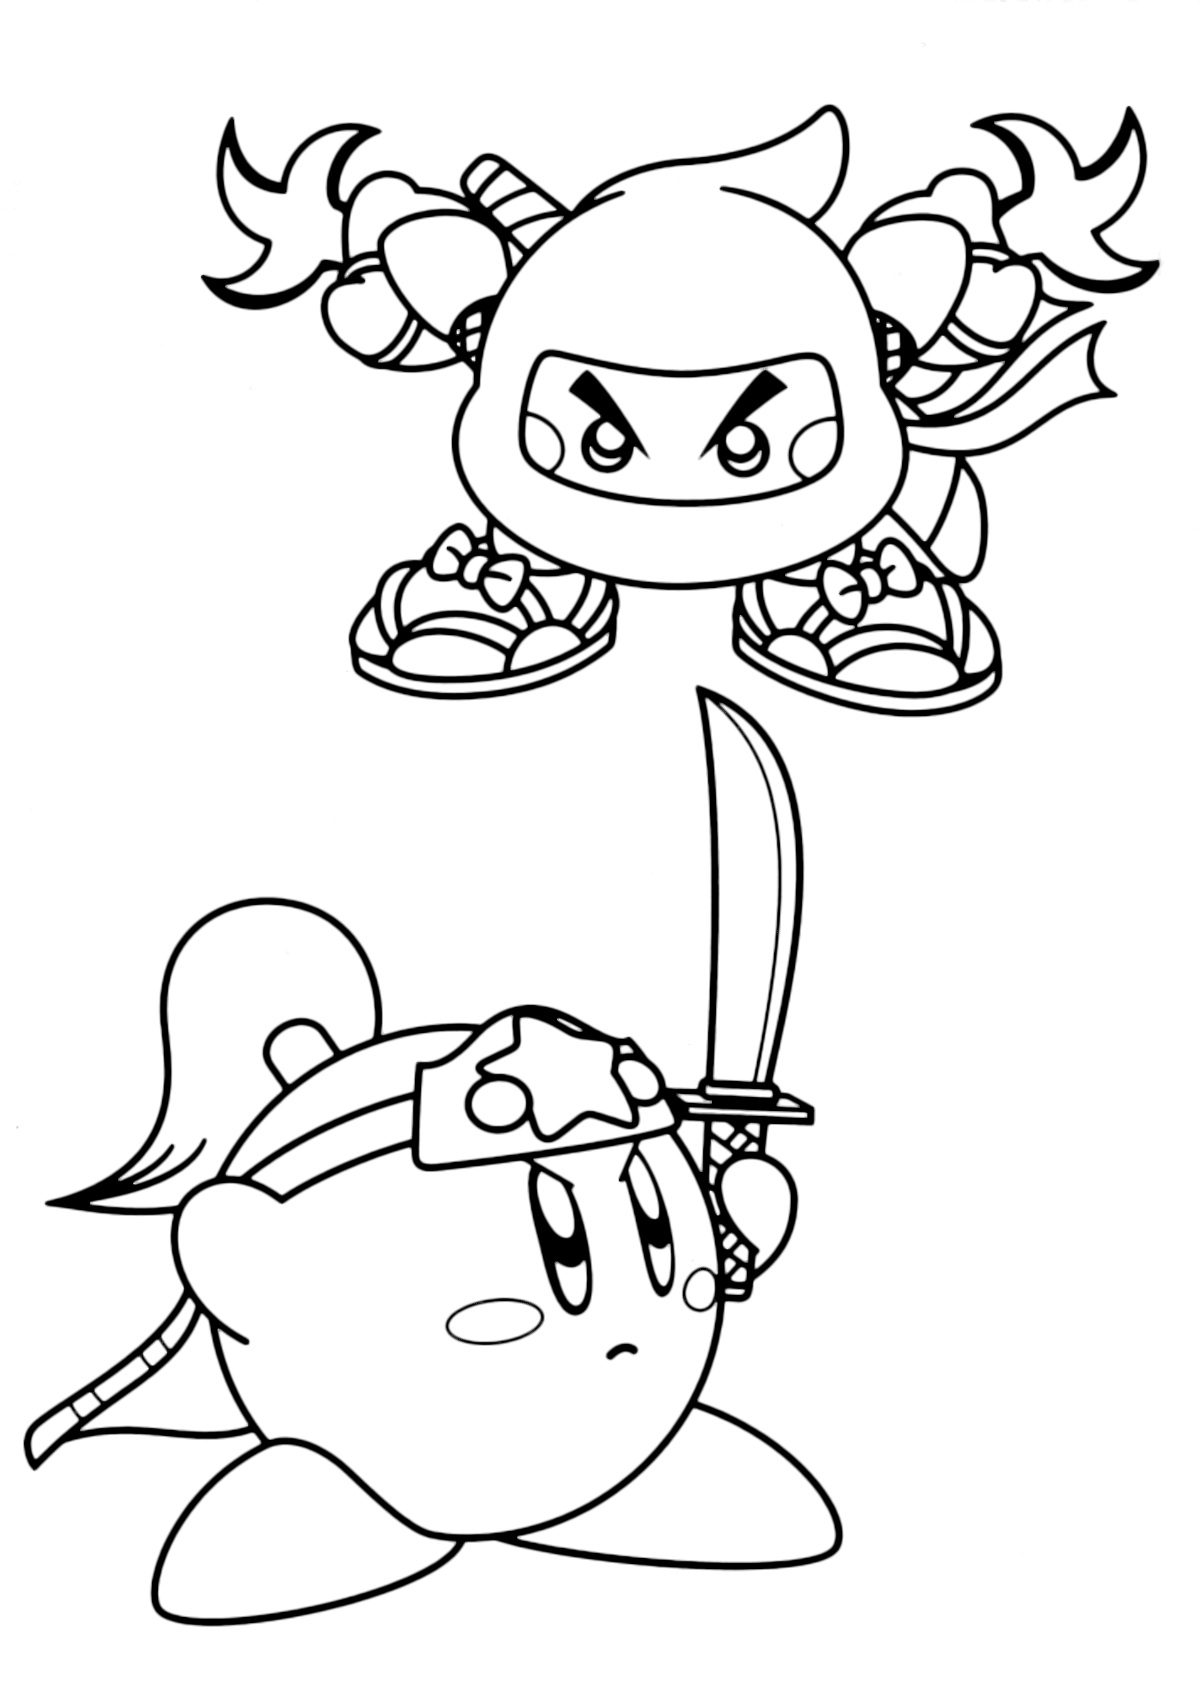 Kirby - Kirby ninja